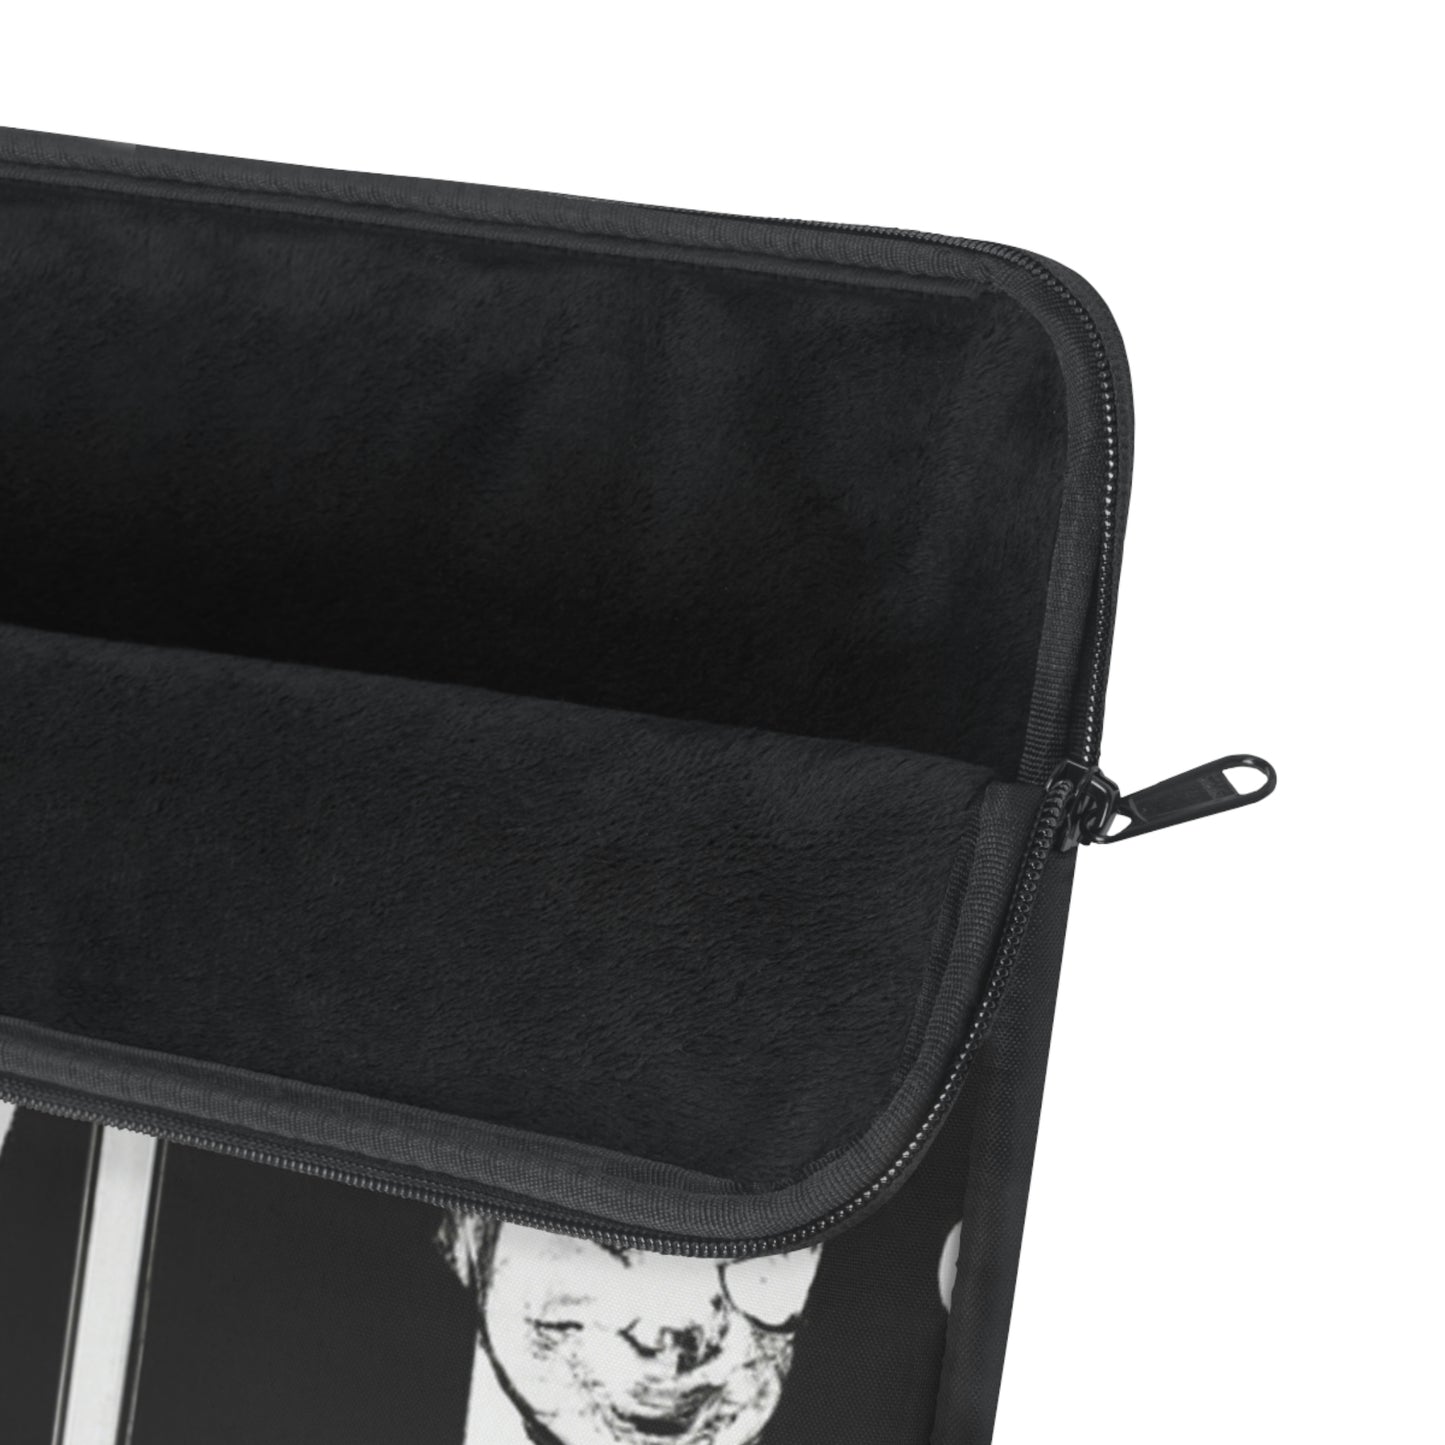 Tin Skeeballer - Comic Book Collector Laptop Computer Sleeve Storage Case Bag